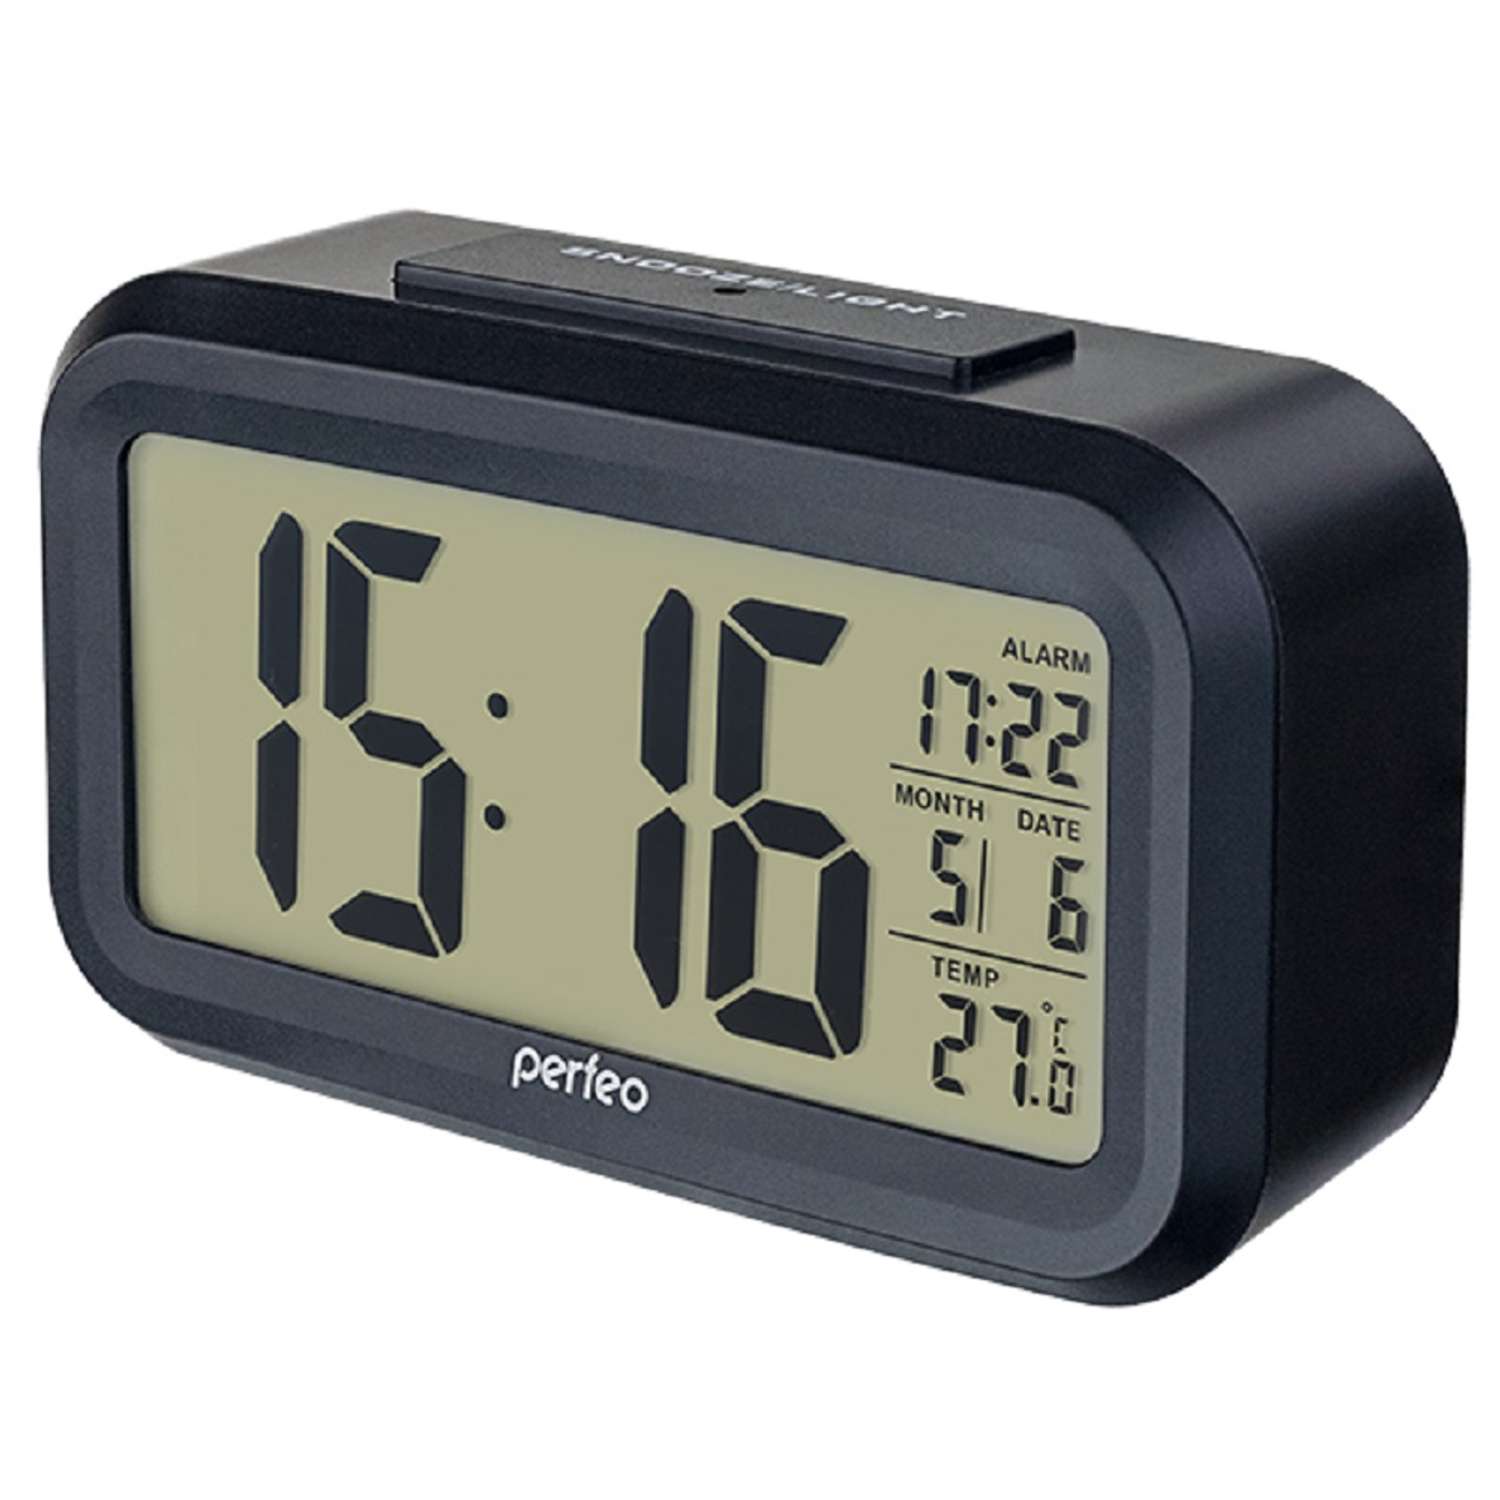 Часы-будильник Perfeo Snuz чёрный PF-S2166 время температура дата - фото 1